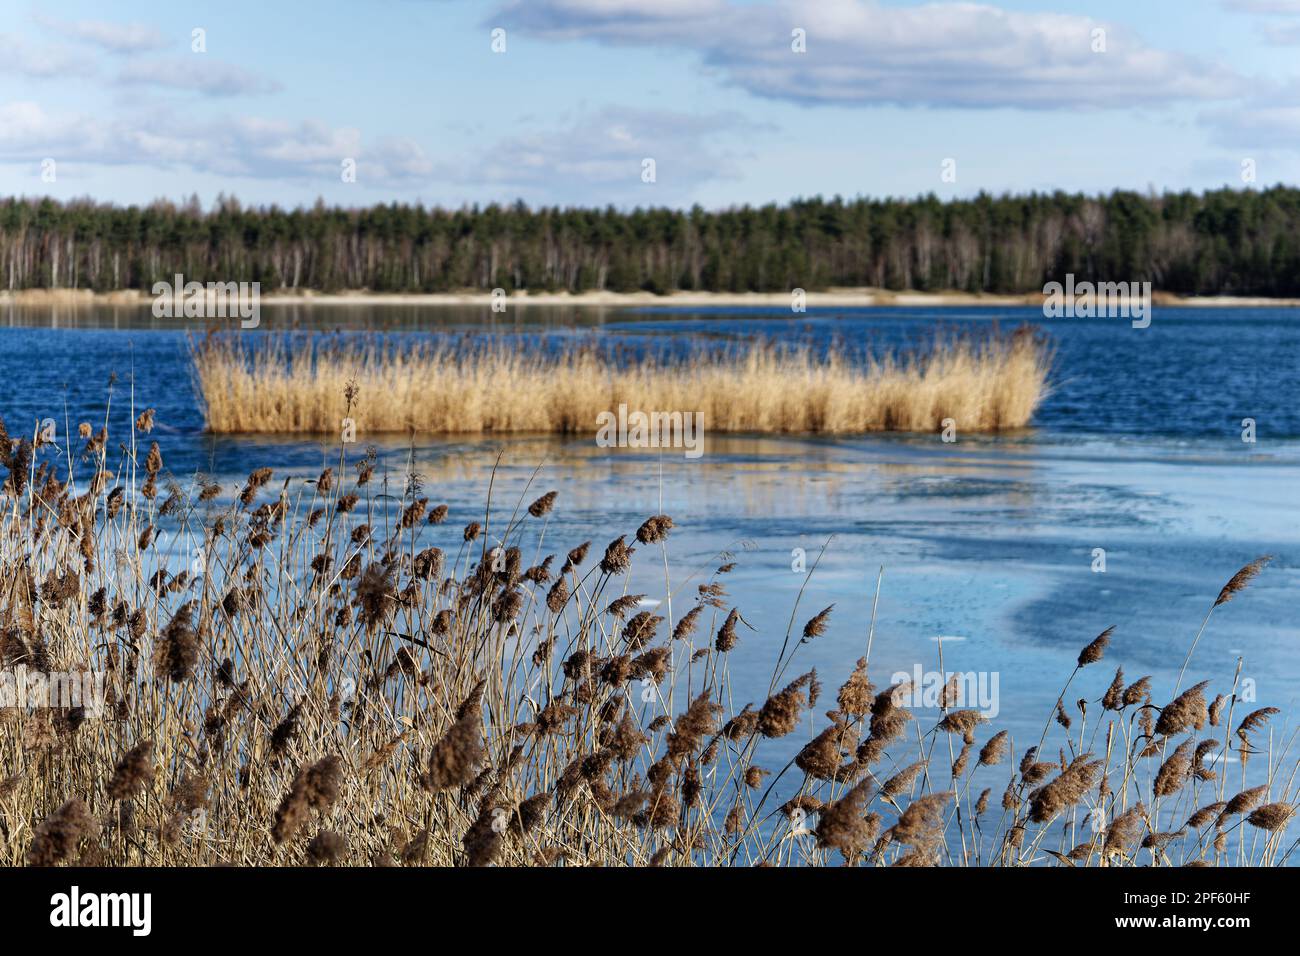 Erba di canna con suggestive infiorescenze sulla riva di un lago parzialmente coperto di ghiaccio, stagione invernale senza neve, tempo soleggiato, acqua blu brillante, Foto Stock